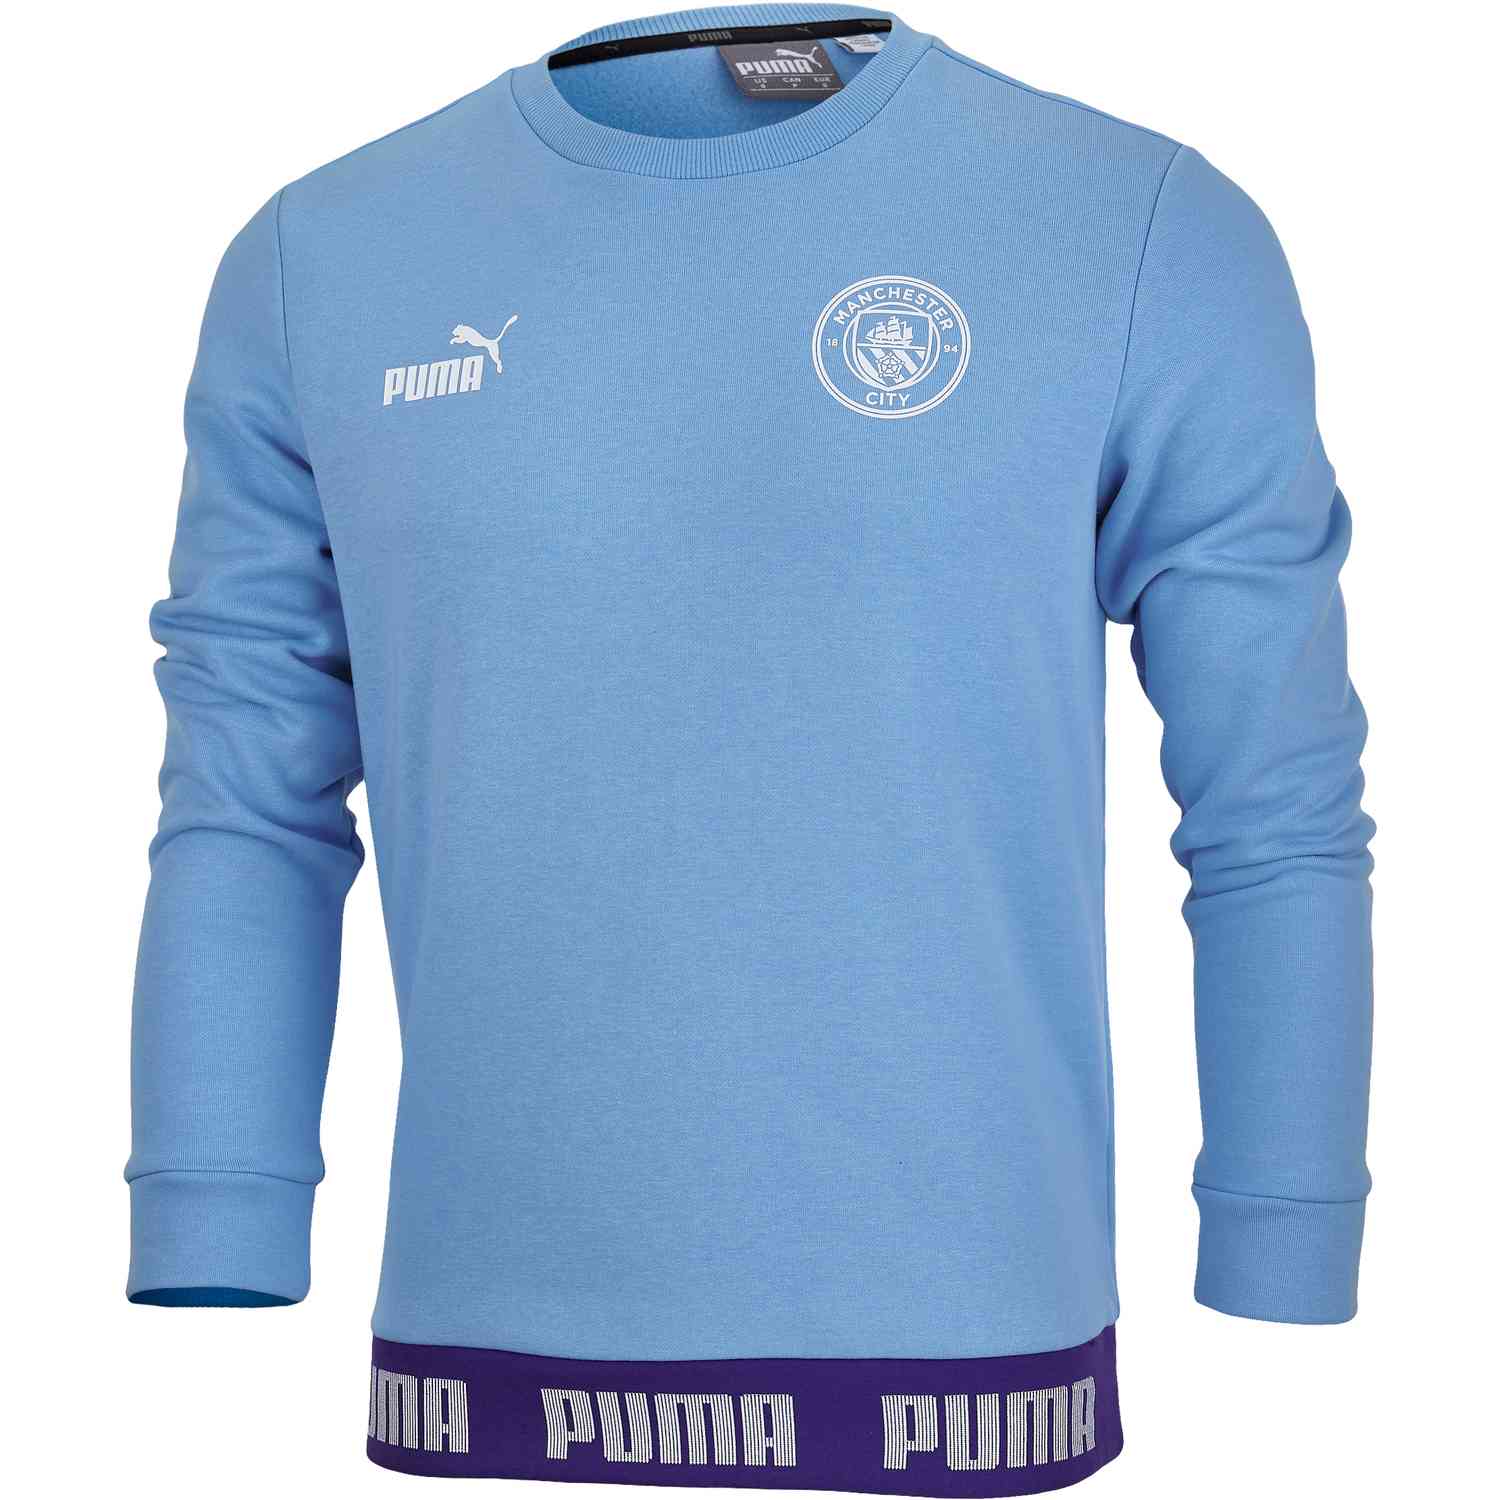 PUMA Culture Sweater - Team Light Blue/White SoccerPro